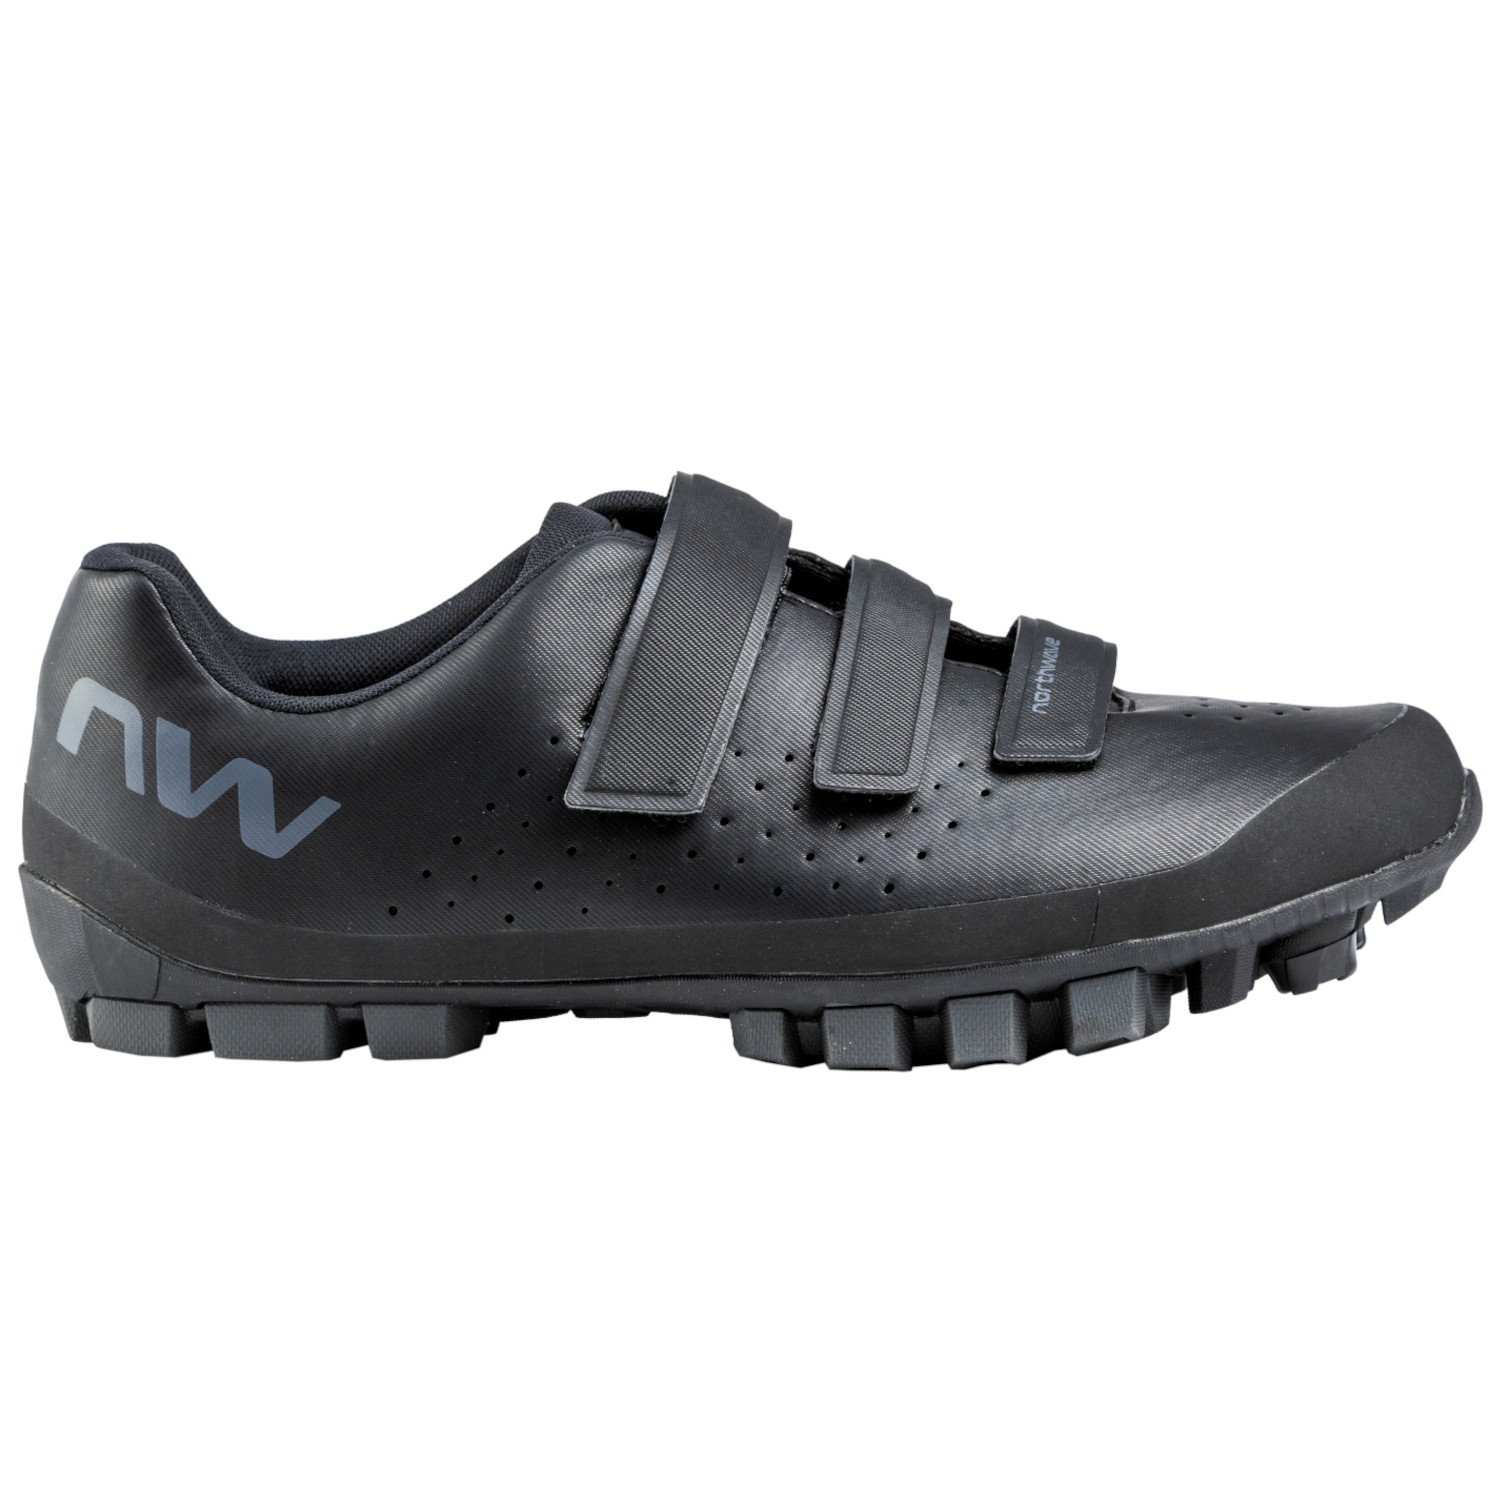 Produktbild von Northwave Hammer MTB Schuhe Herren - schwarz/dunkelgrau 19